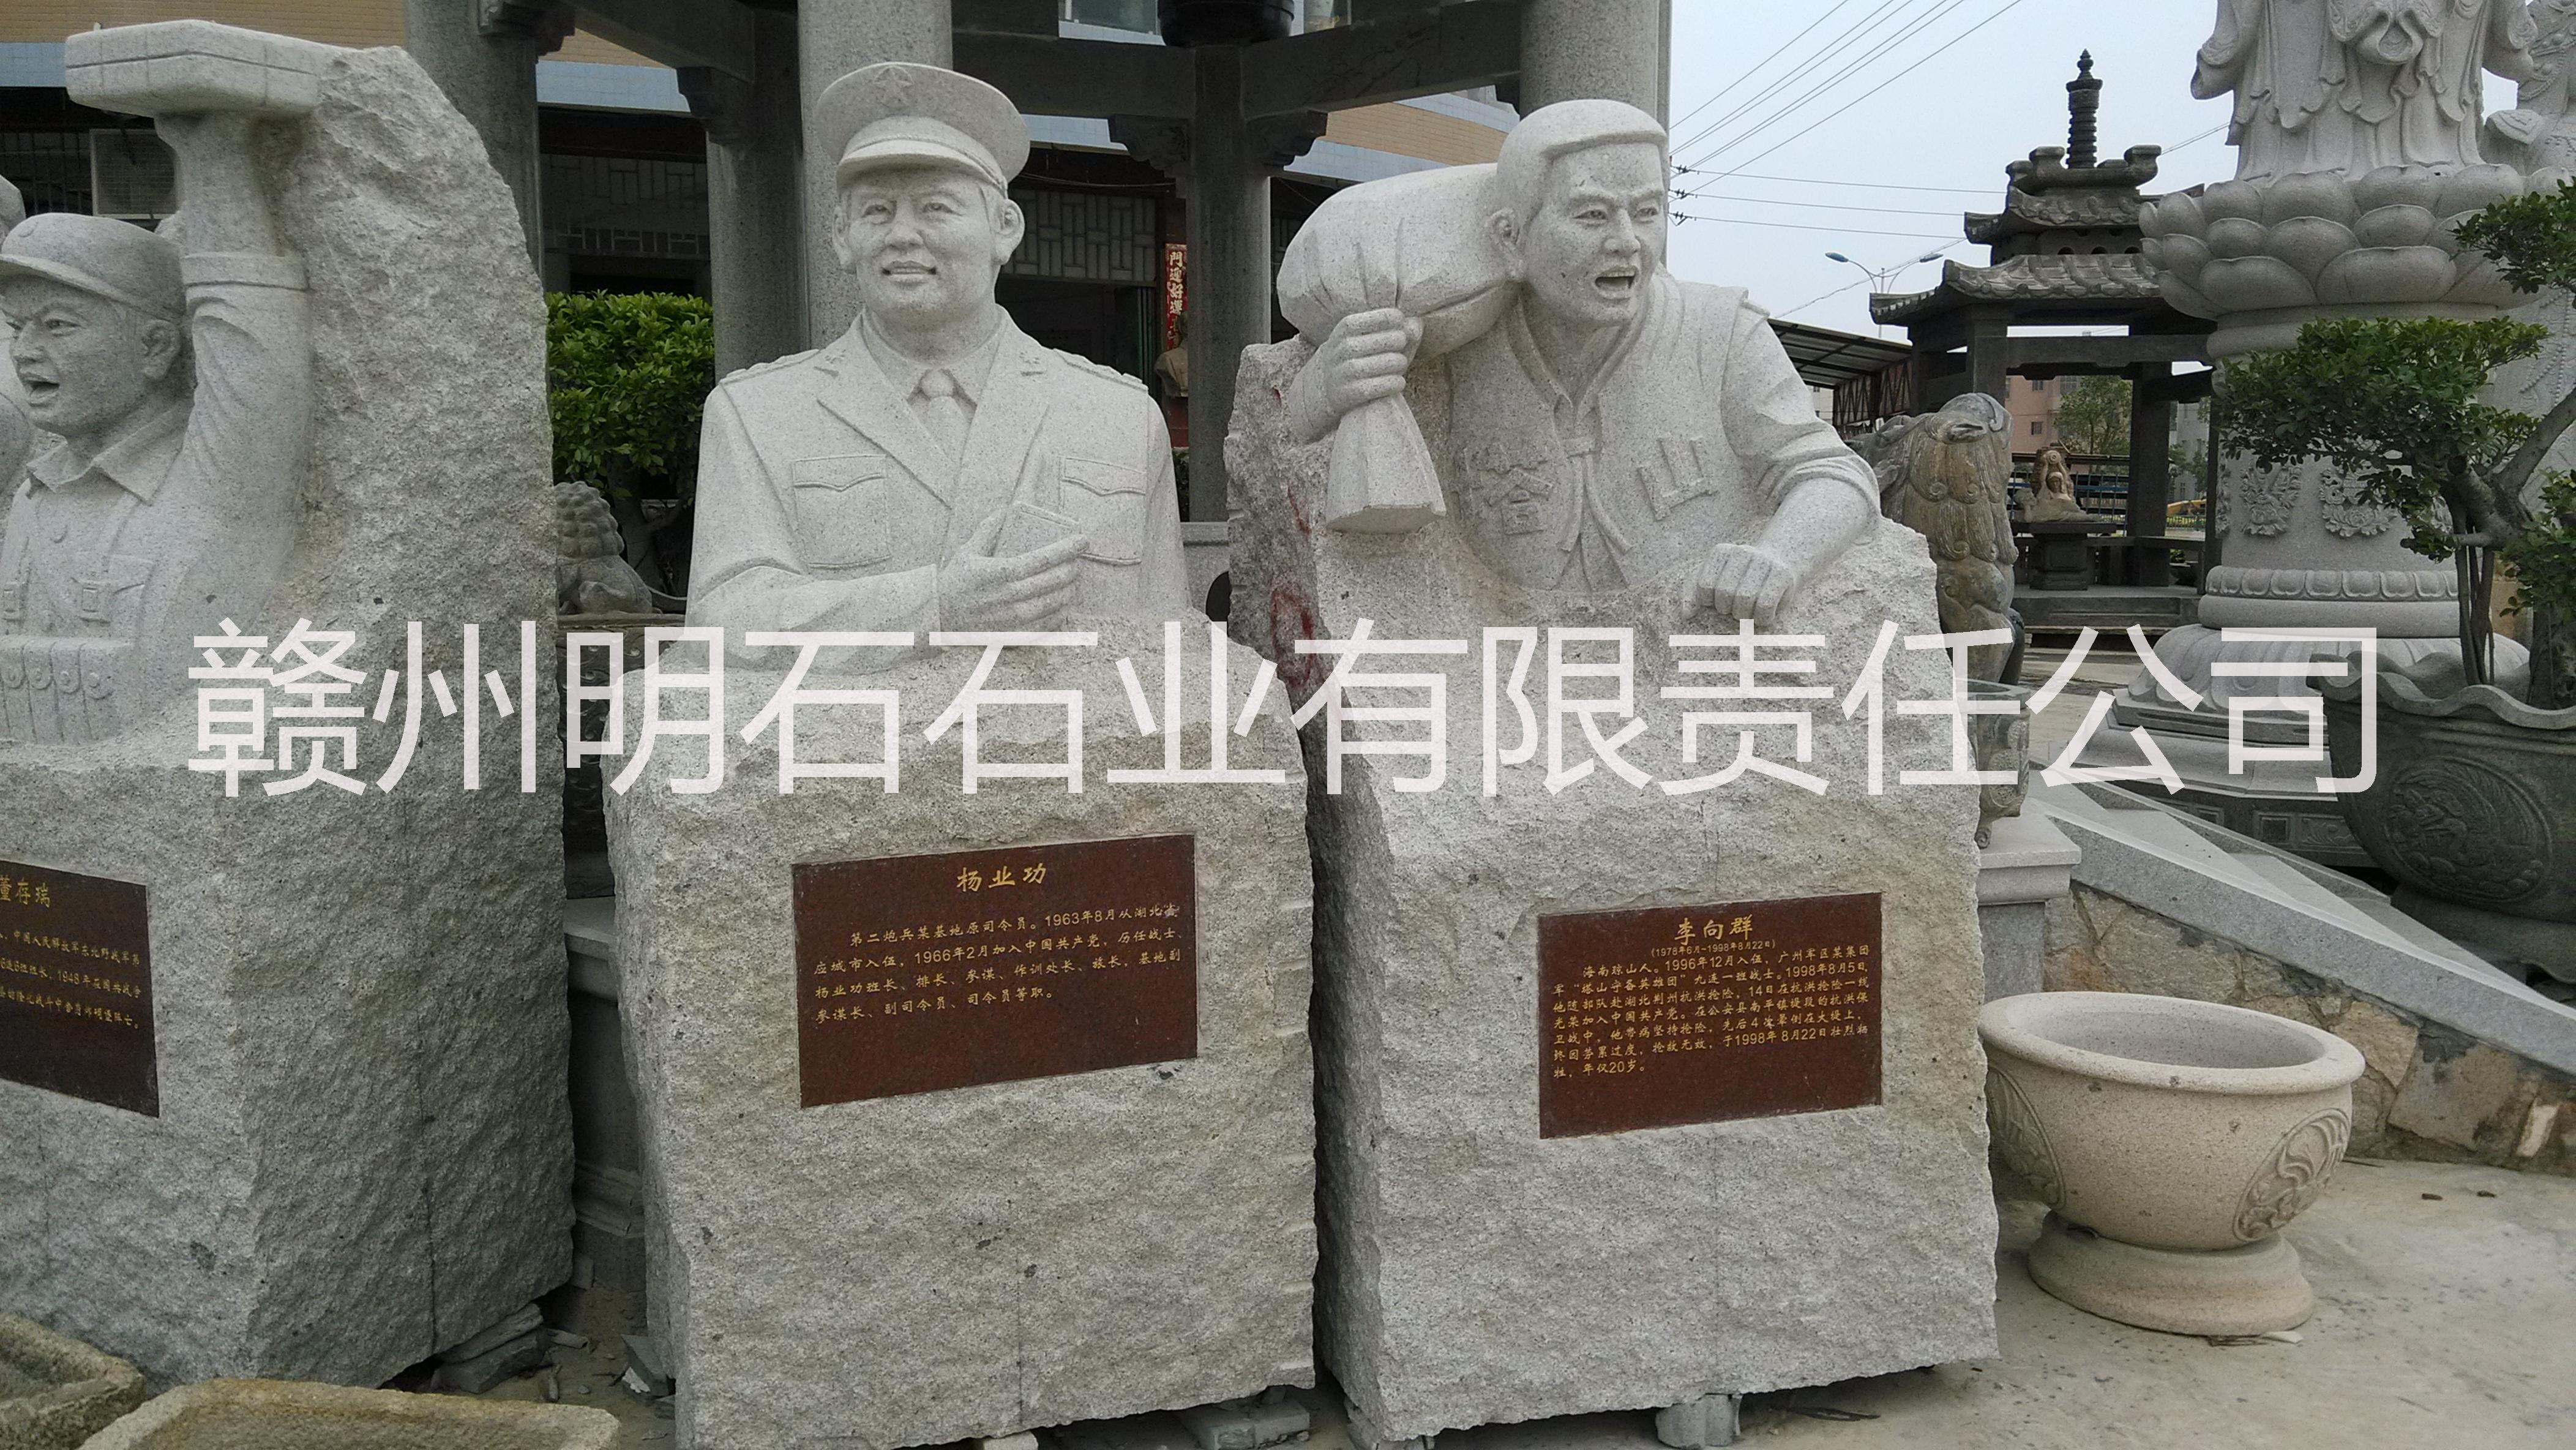 供应用于装饰纪念的赣州红军雕塑，赣州石雕人物雕塑,赣州哪里有做人物雕像的